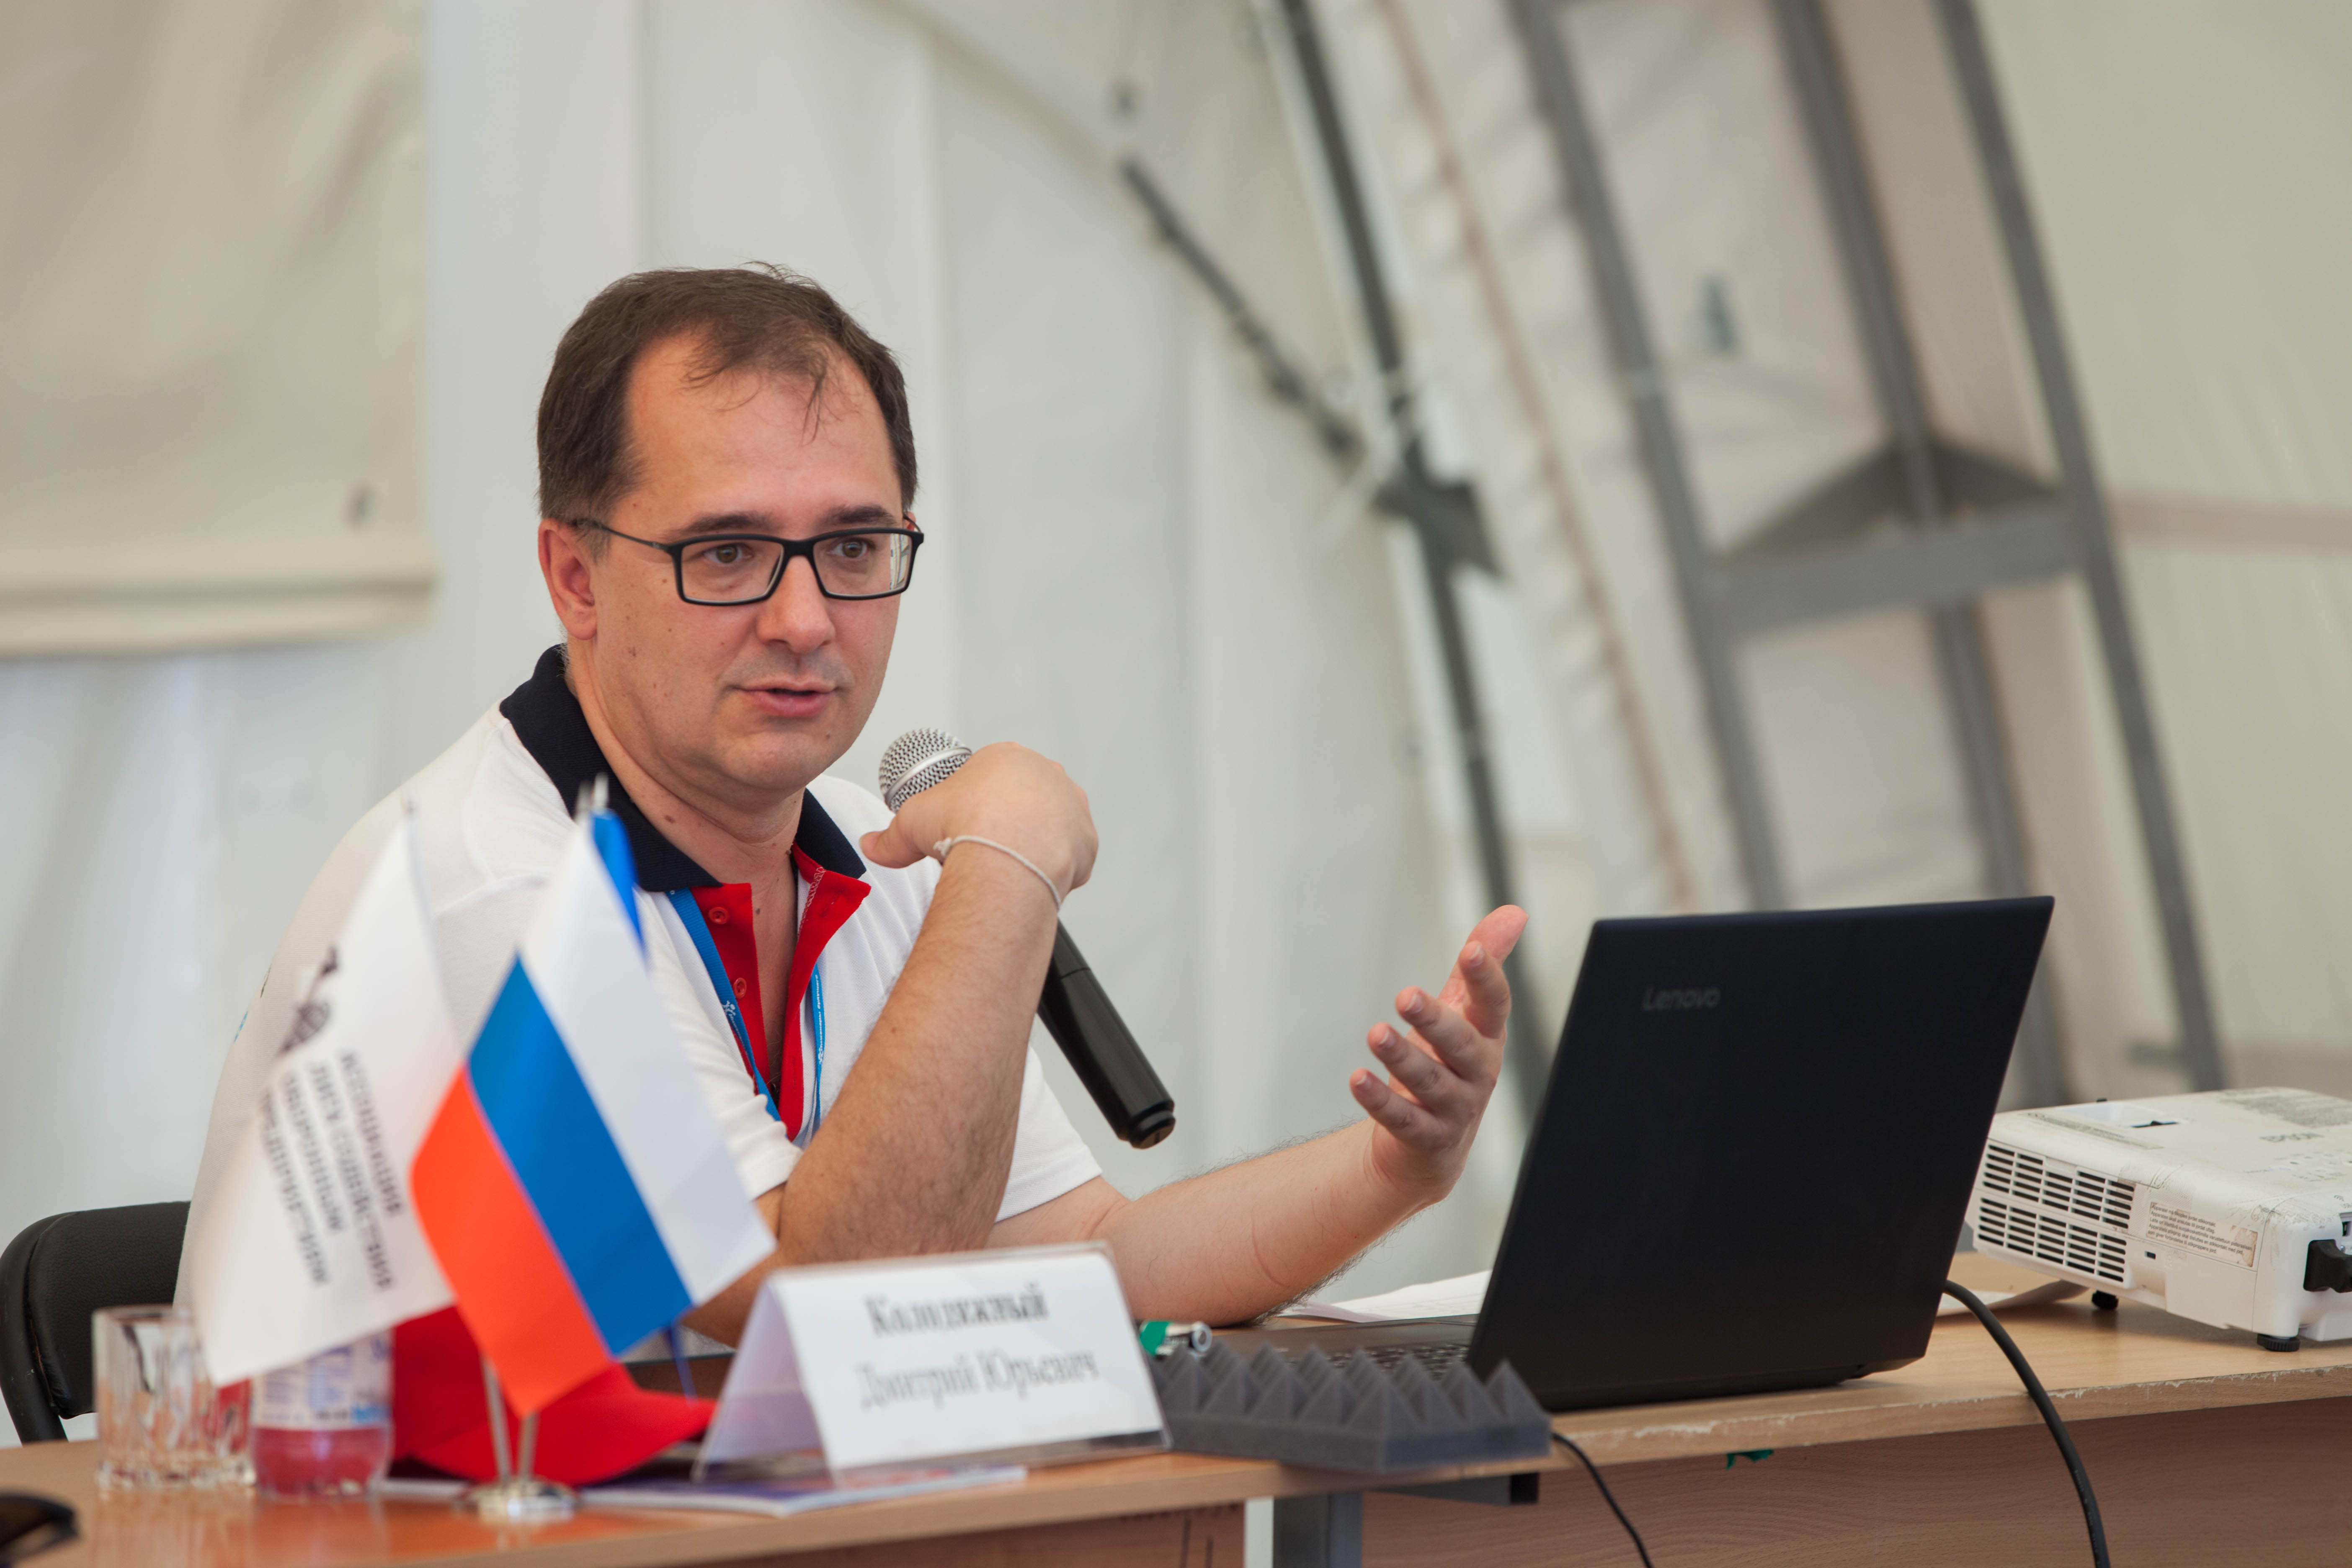 Дмитрий Колодяжный на Форуме «Инженеры будущего»: «Это то место, где с нужными людьми обсуждаются нужные проблемы»